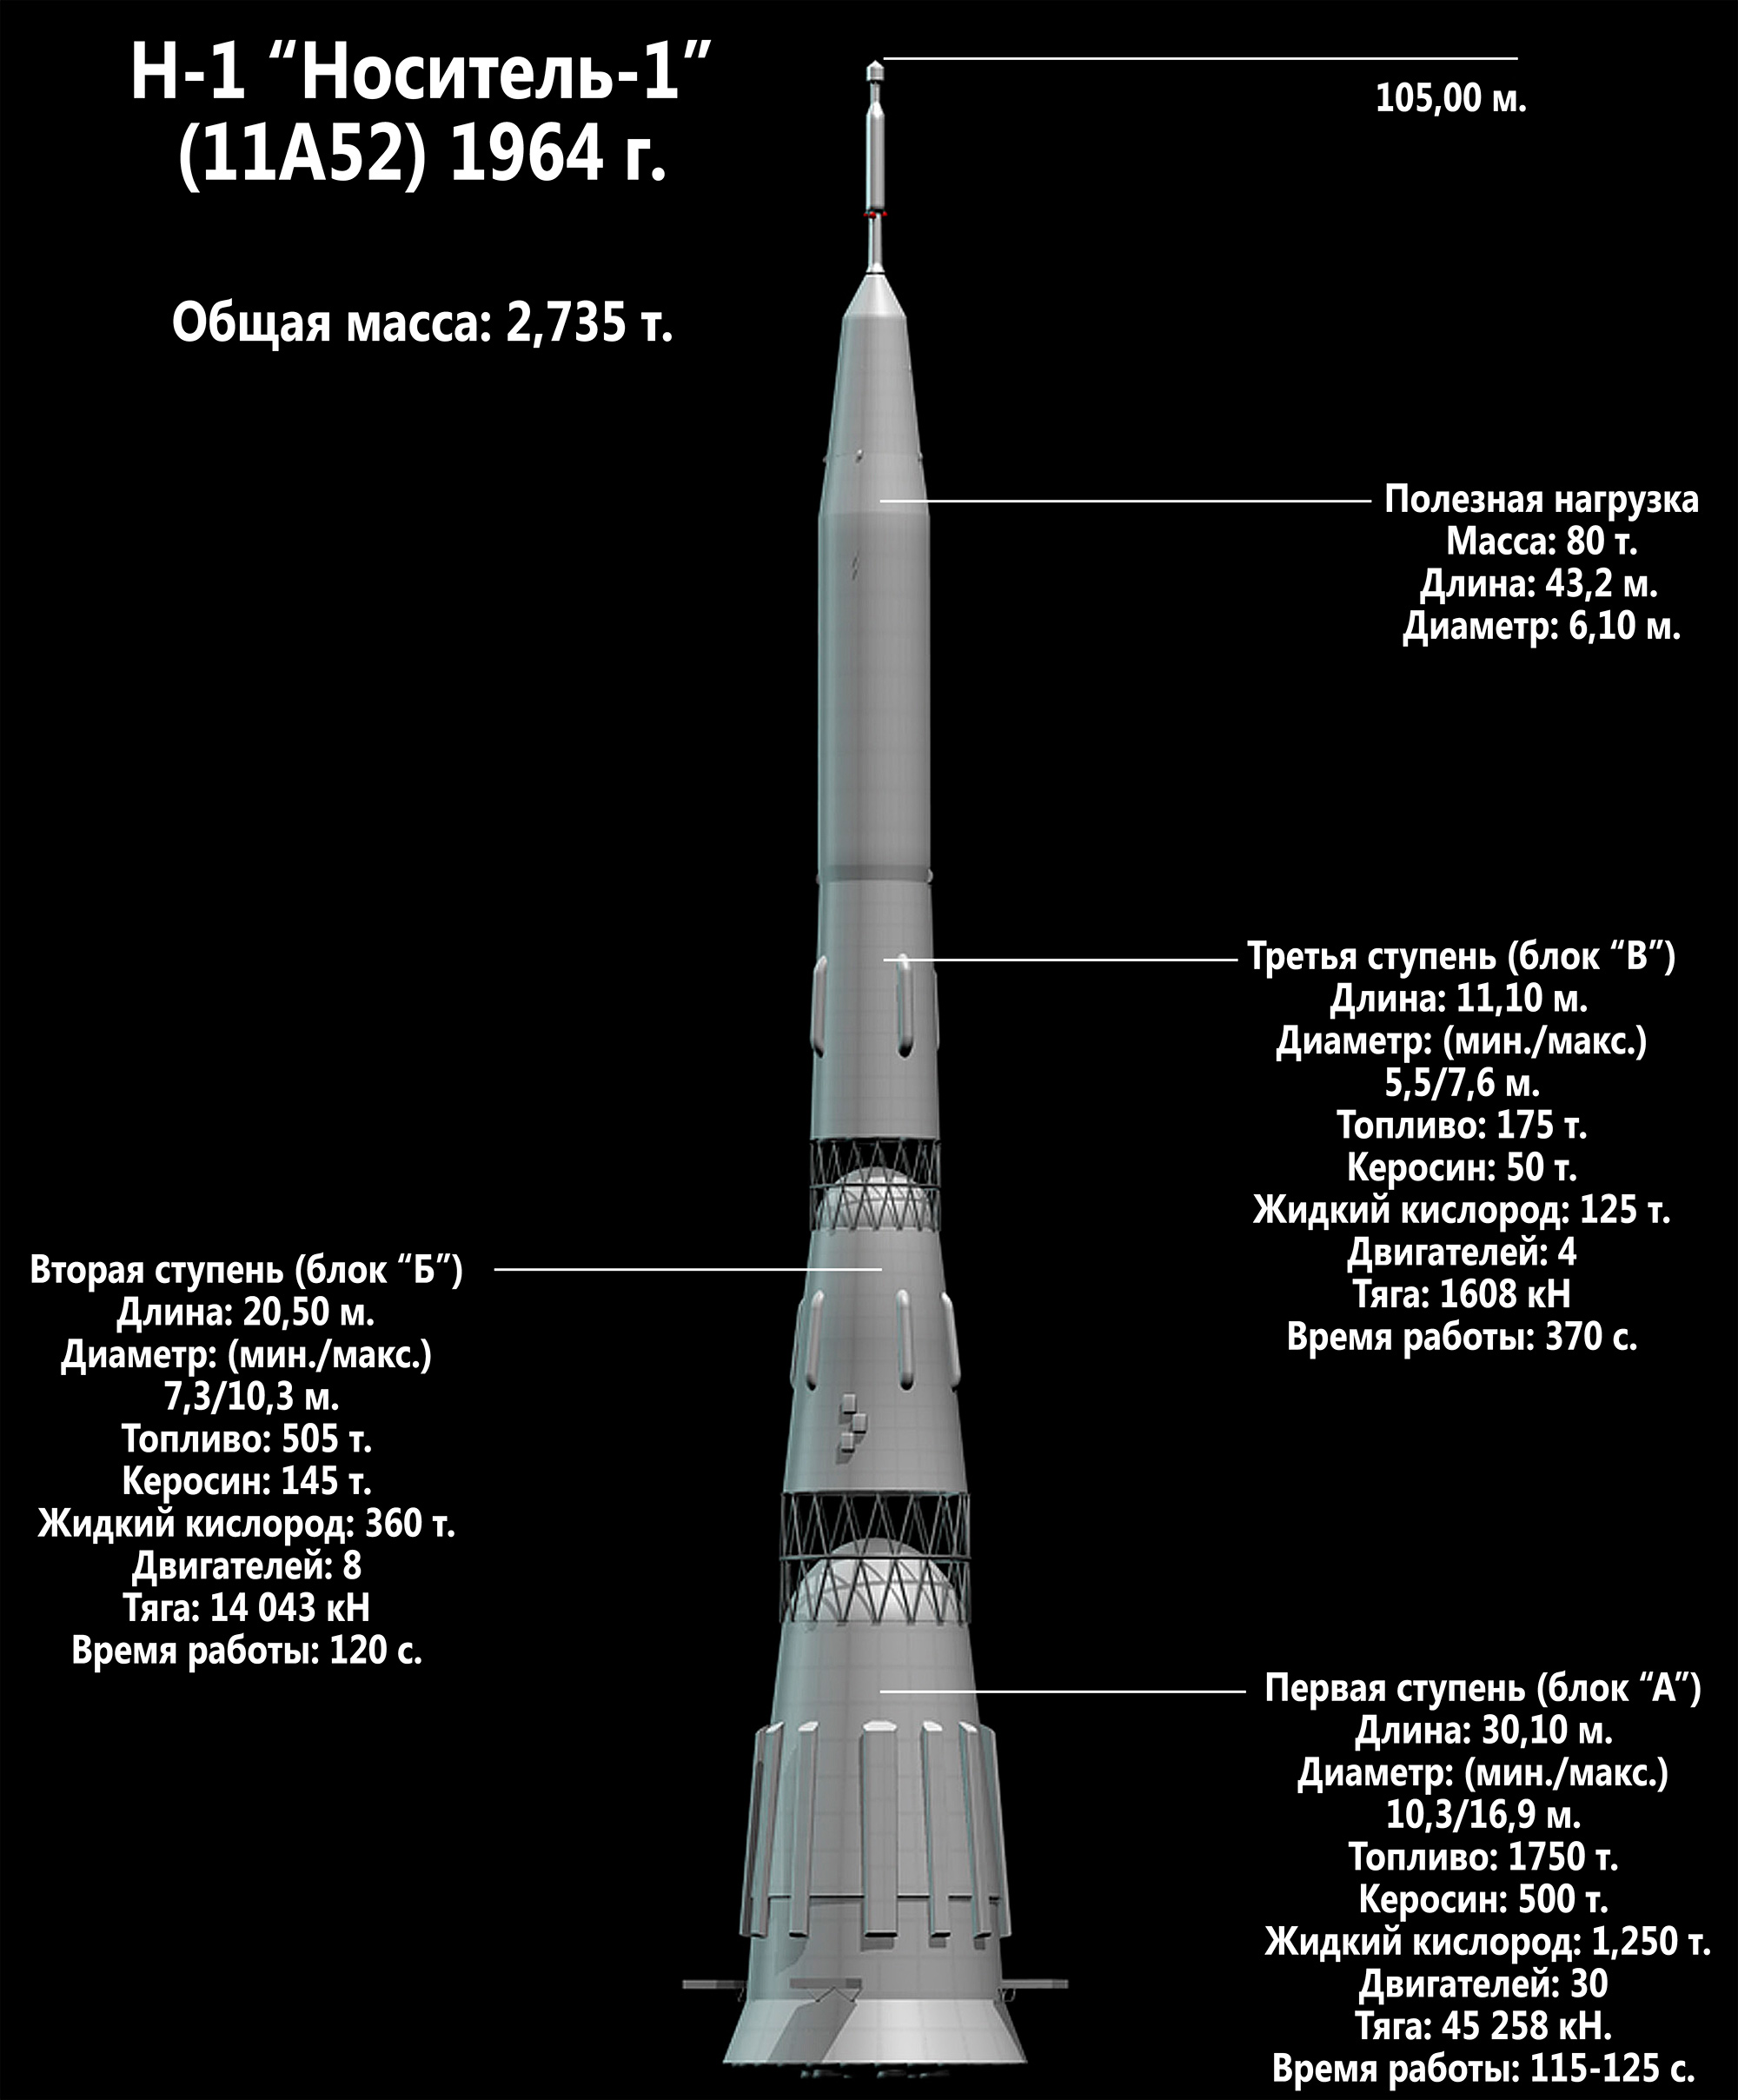 Ракета-носитель Н-1 способная выводить на орбиту Земли 80 тонн груза. Именно с ней связывали надежды на полеты к Марсу и Луне в 1960-х г.г.